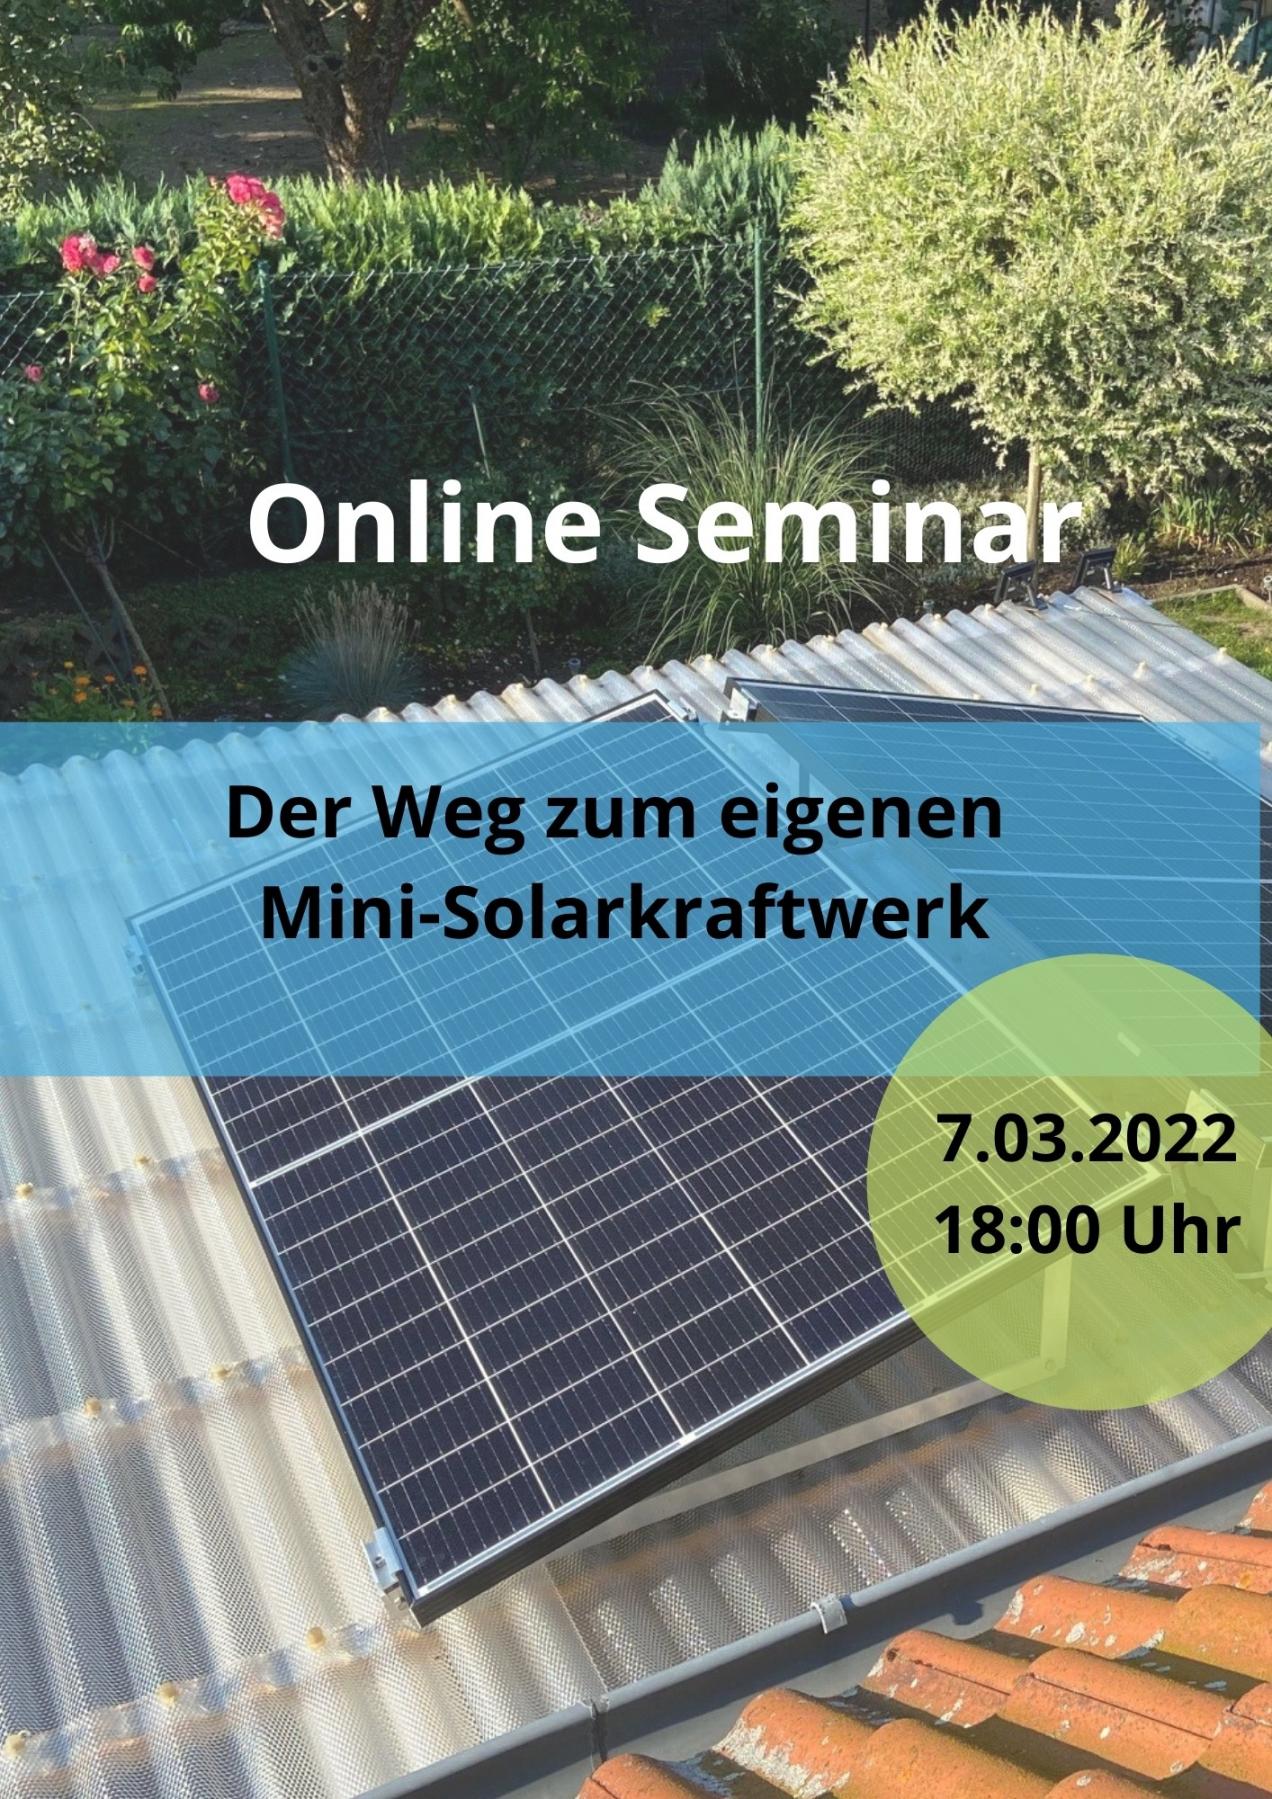 Der Weg zum eigenen Mini-Solarkraftwerk am 07.03.2022 Online um 18 Uhr